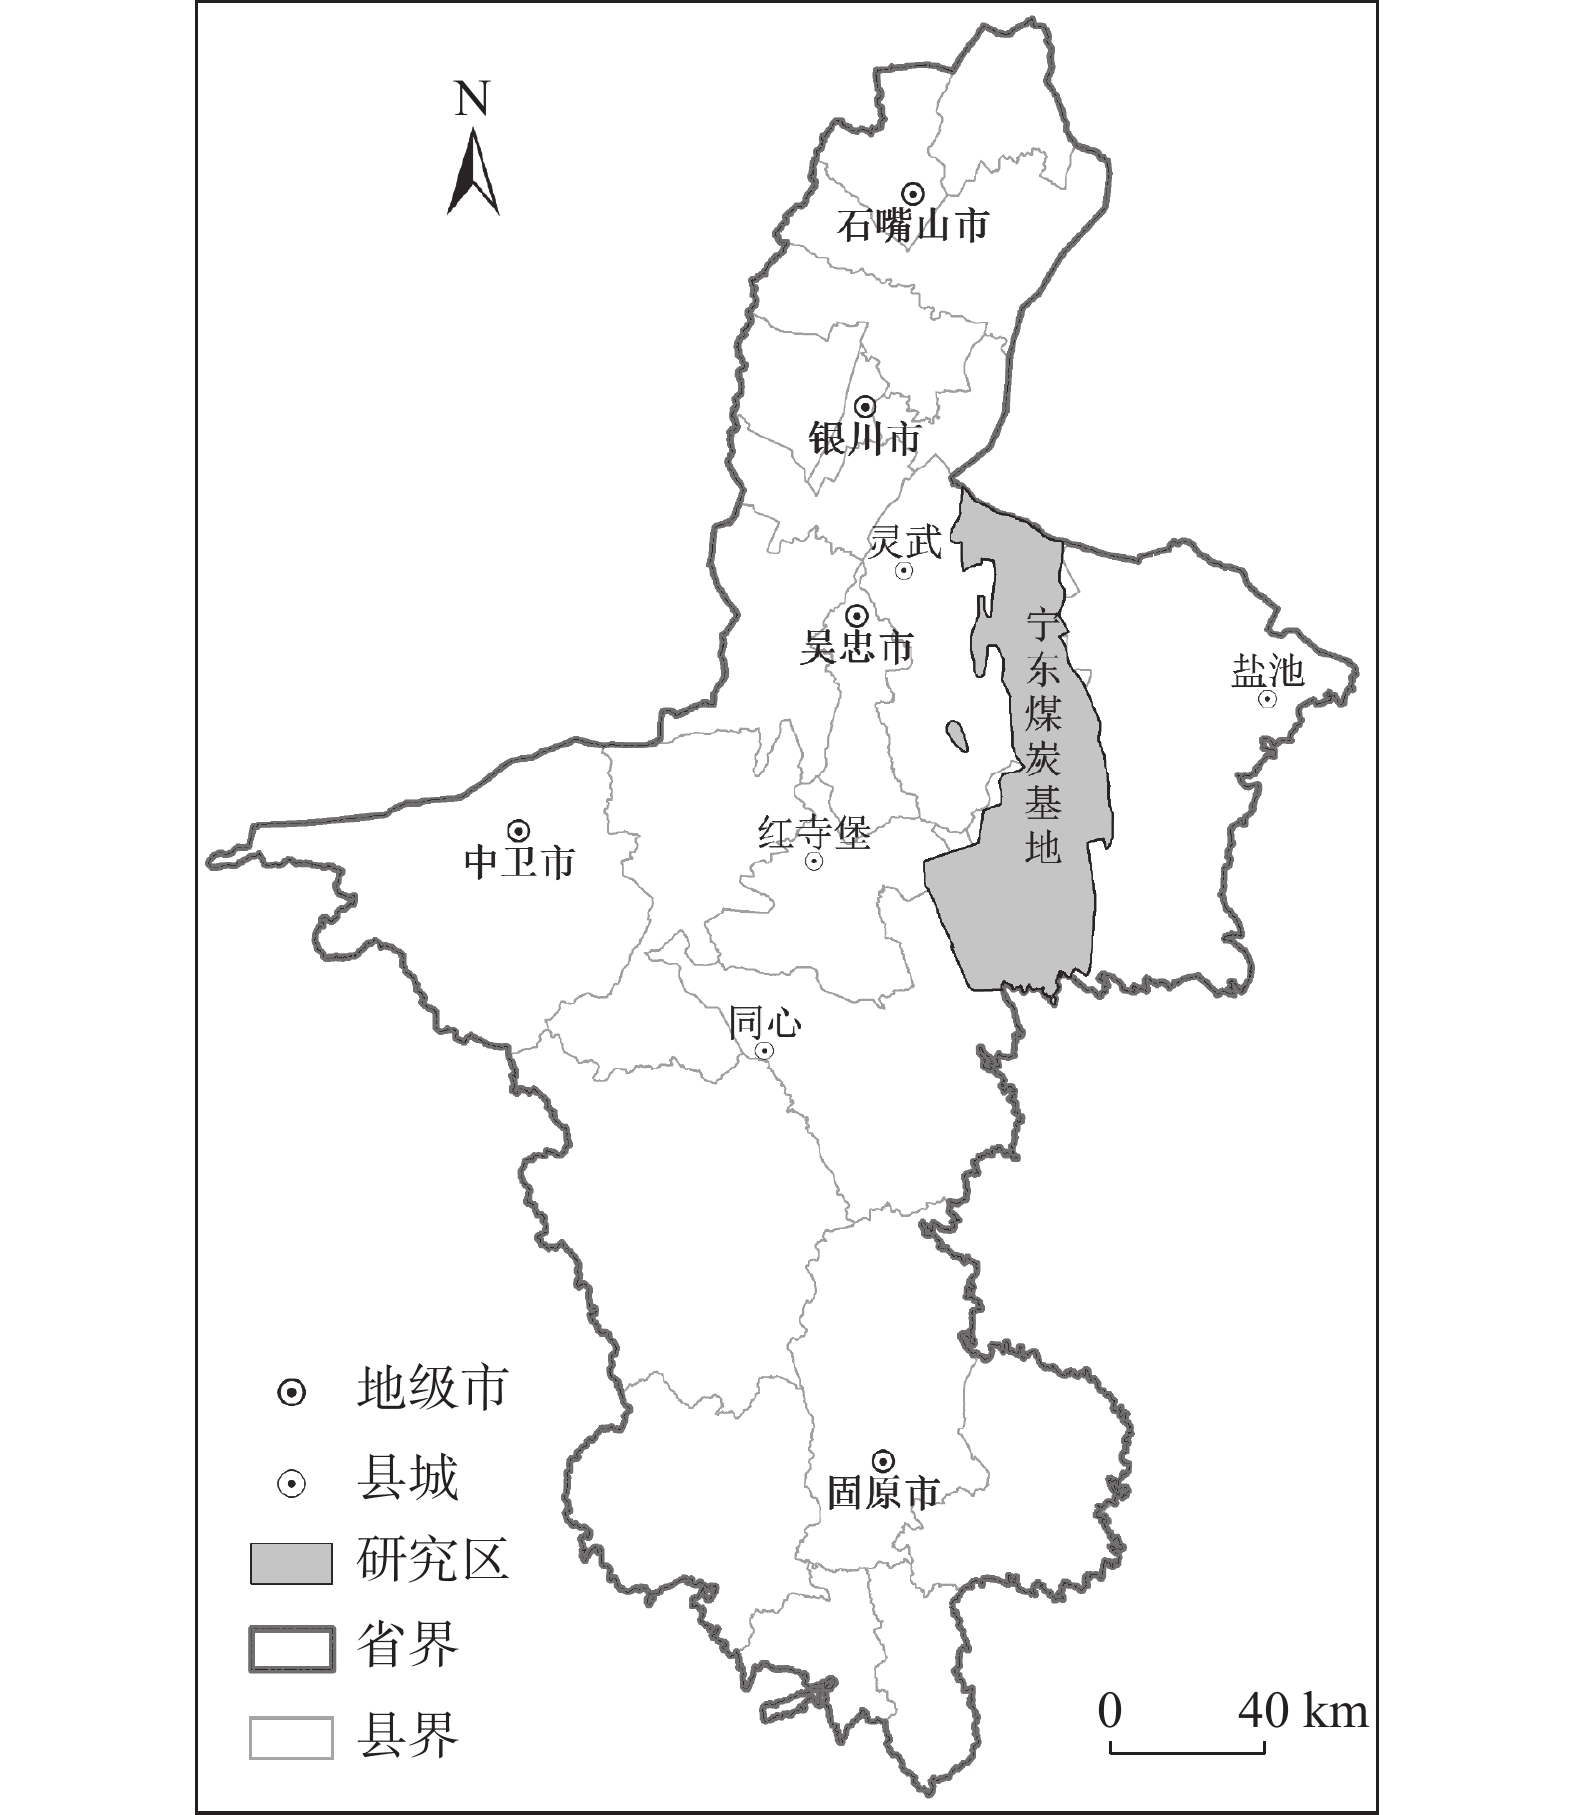 宁陕县土地利用总体规划（2006 - 2020年）调整完善说明-宁陕县人民政府